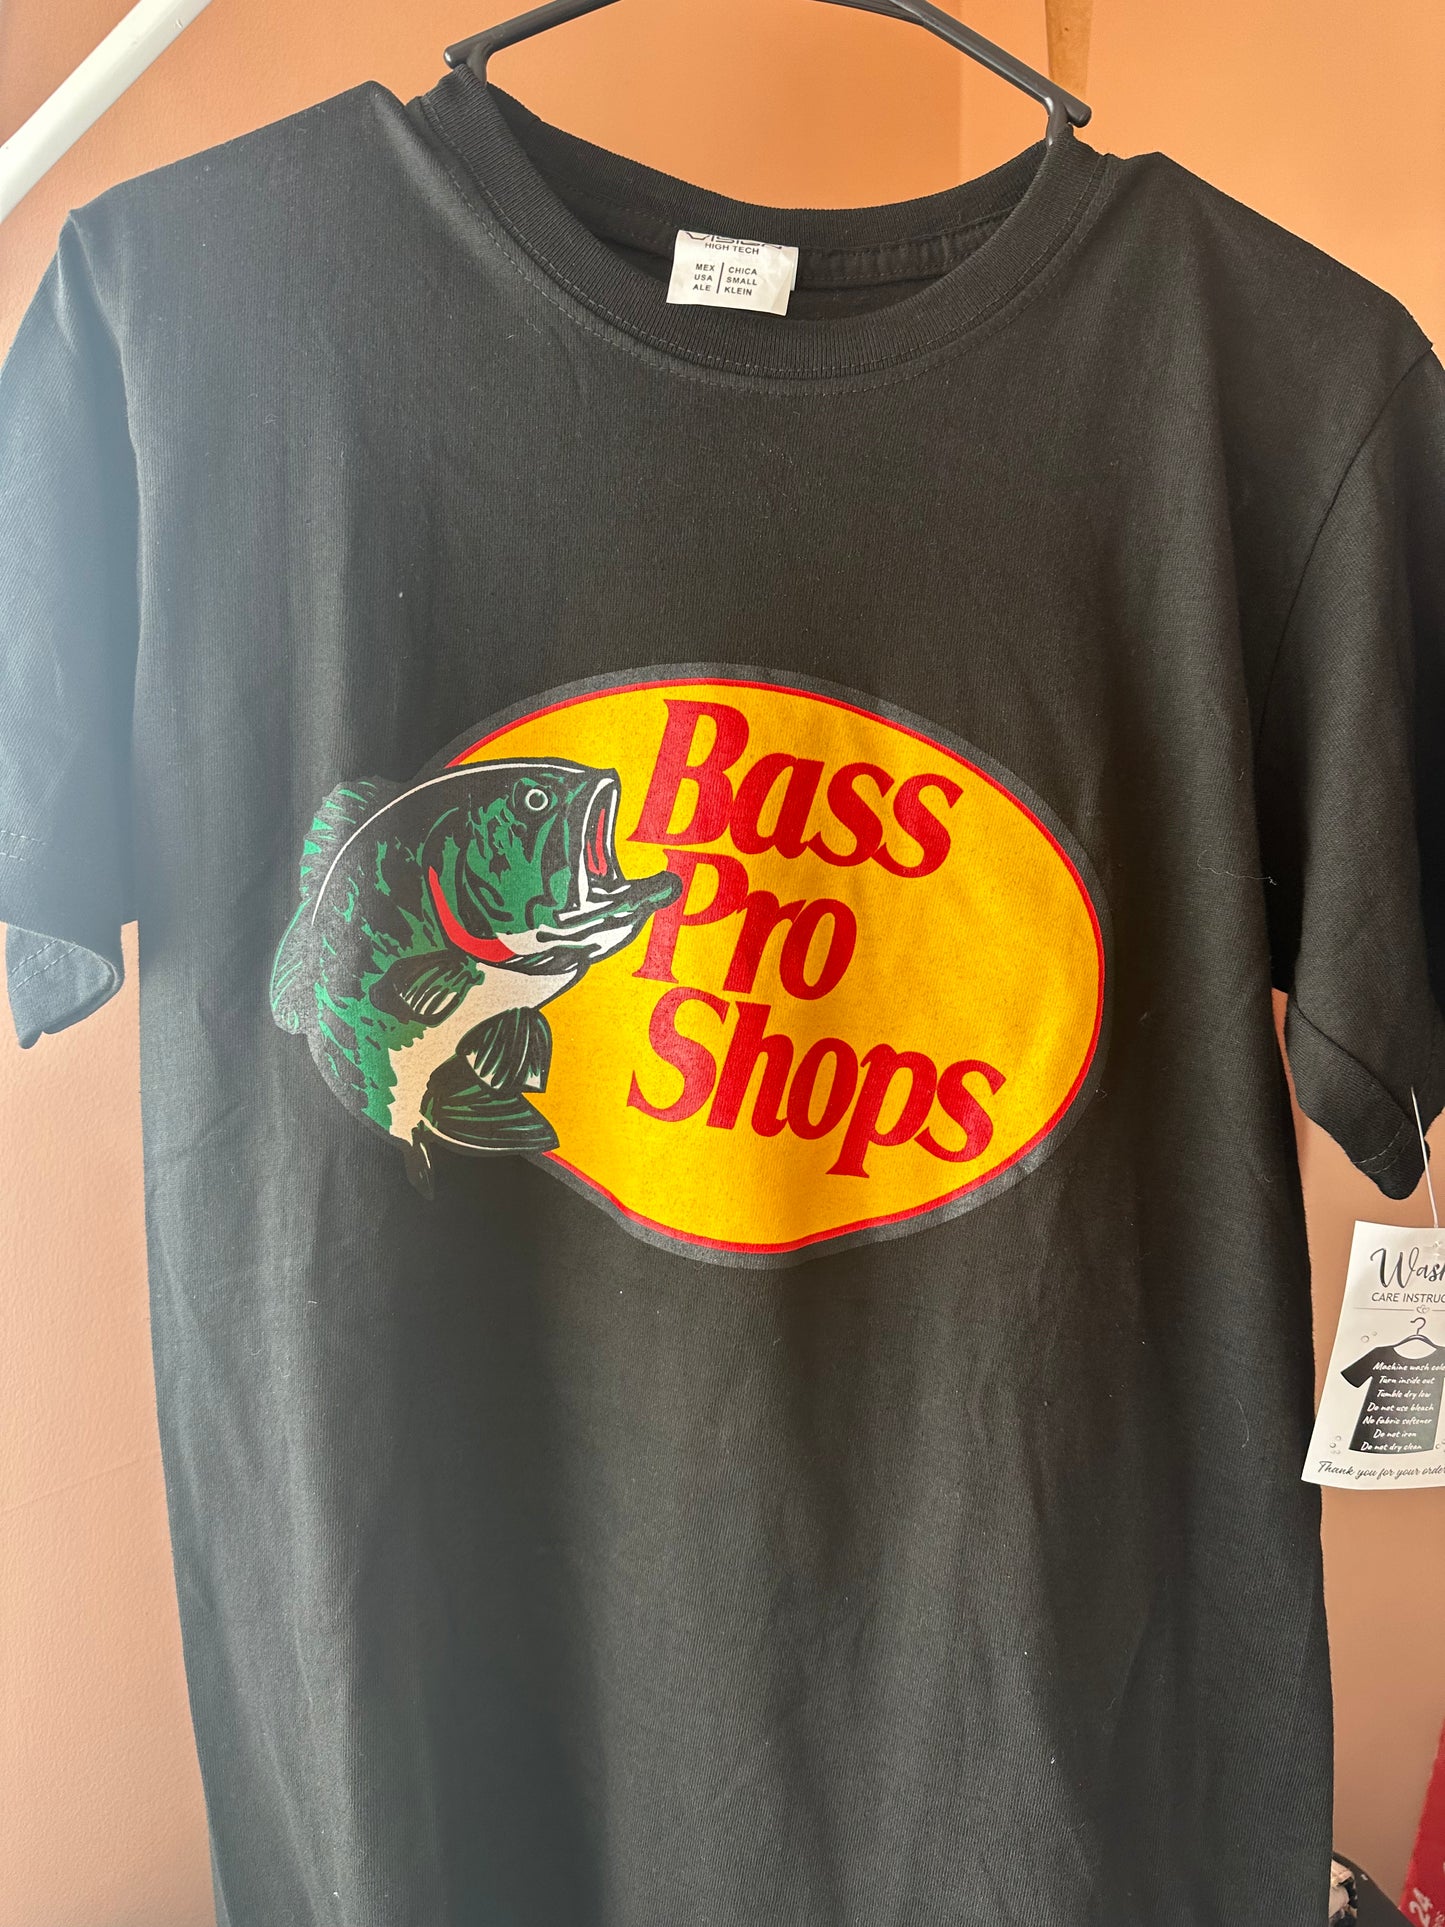 Bass pro shops t-shirt